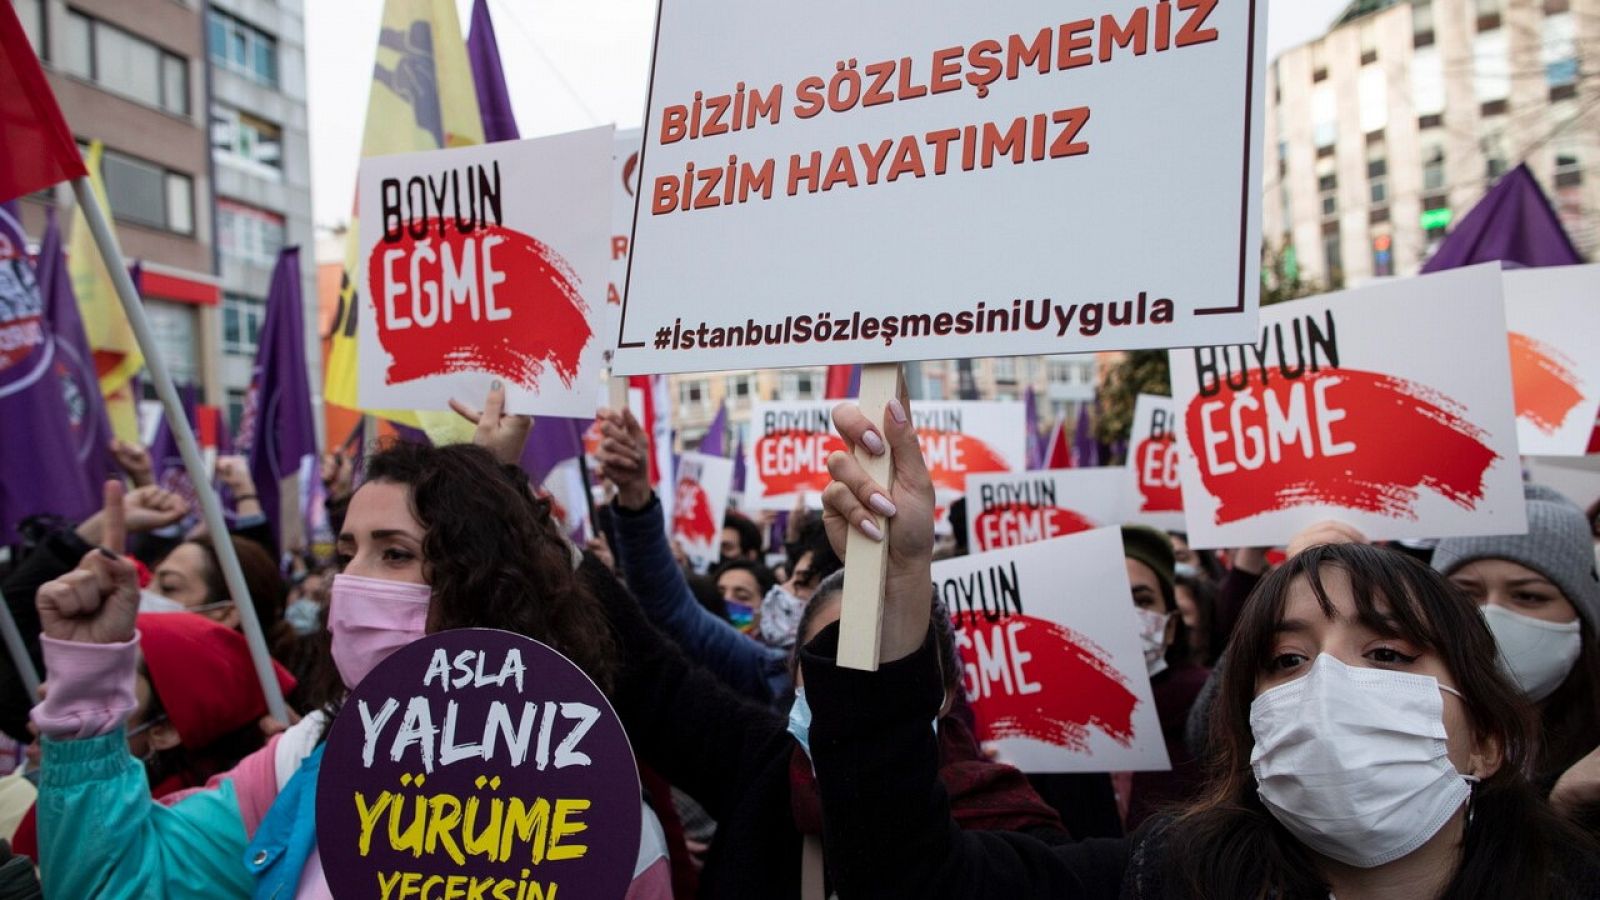 Erdogan confirma la salida de Turquia del convenio de Estambul, el tratado que combate la violencia machista